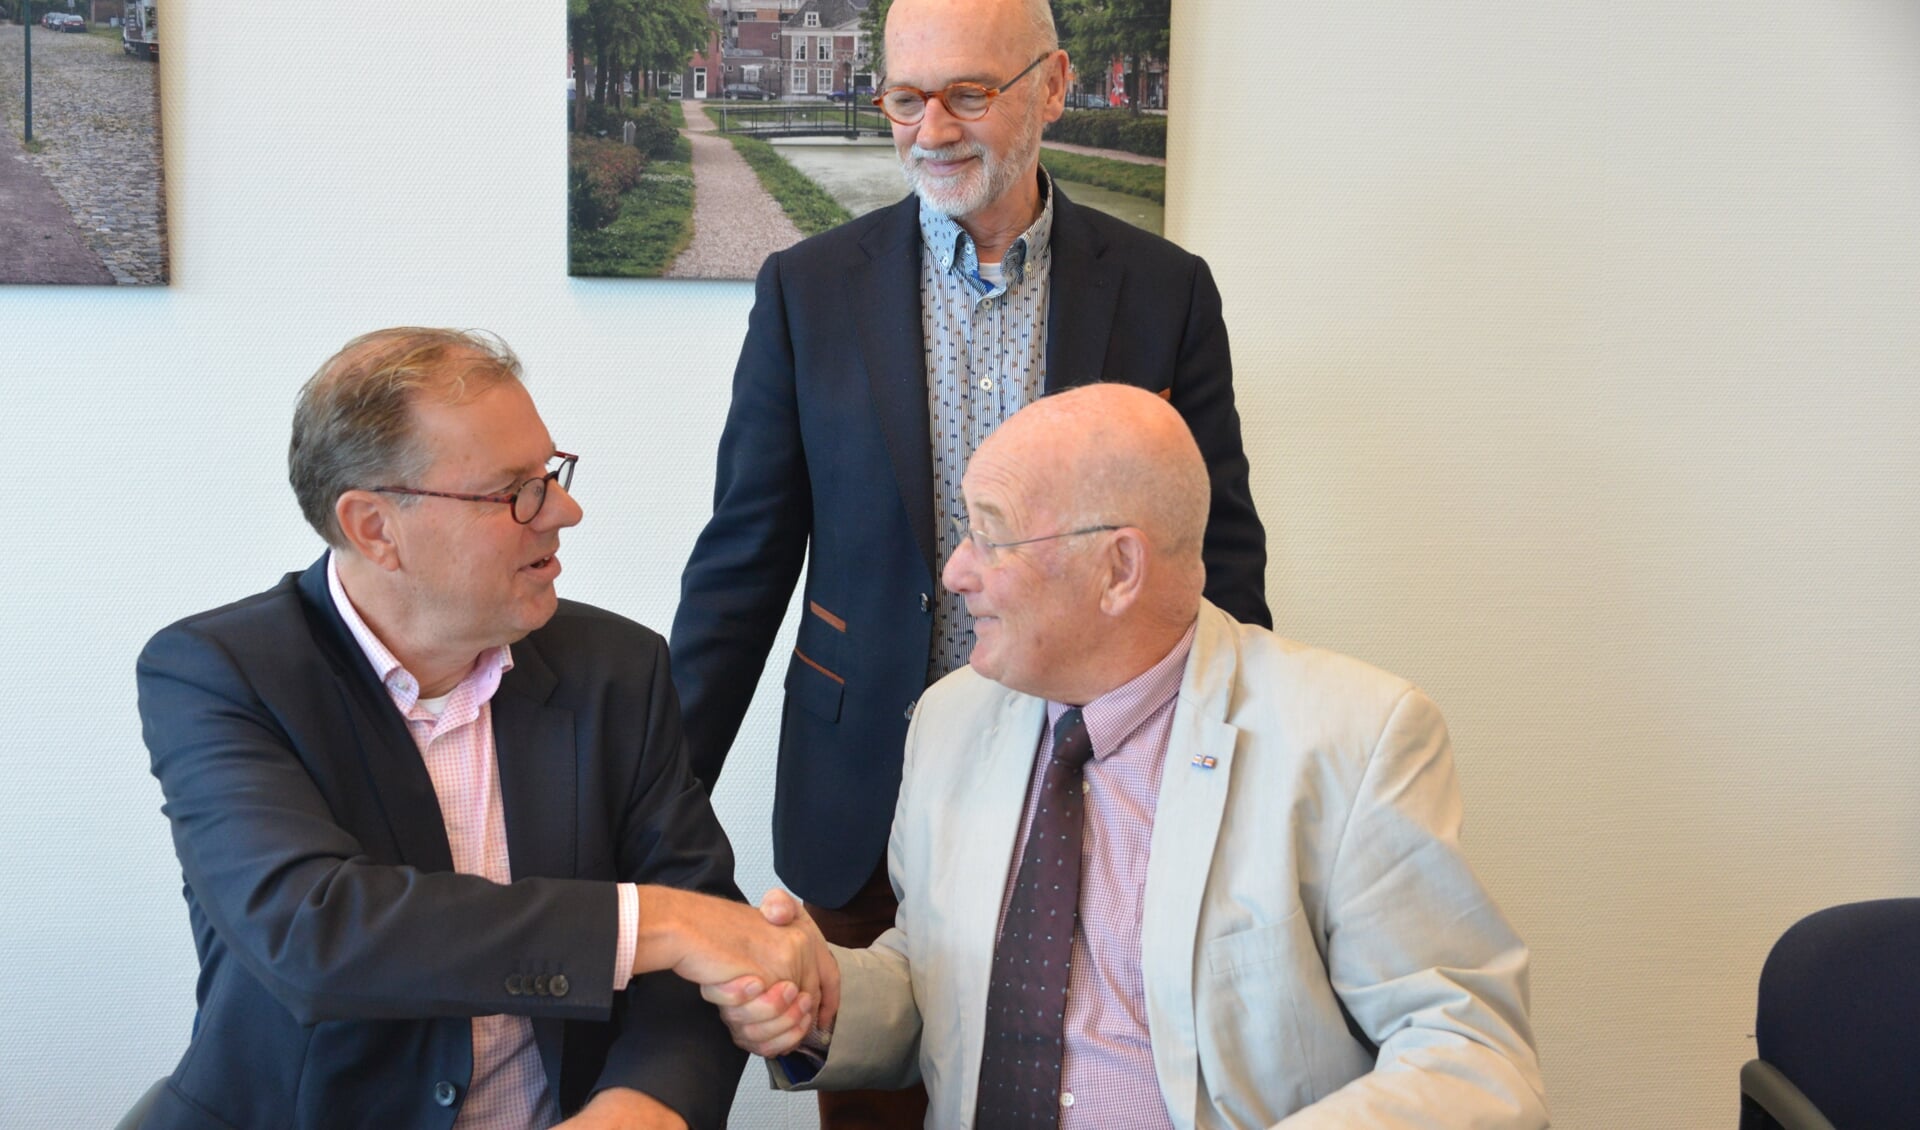 Voorzitter Jan Legierse (rechts) en wethouder Koos Krook bezegelen de overeenkomst met een handdruk. Penniingmeester Rien van Zundert kijkt toe.